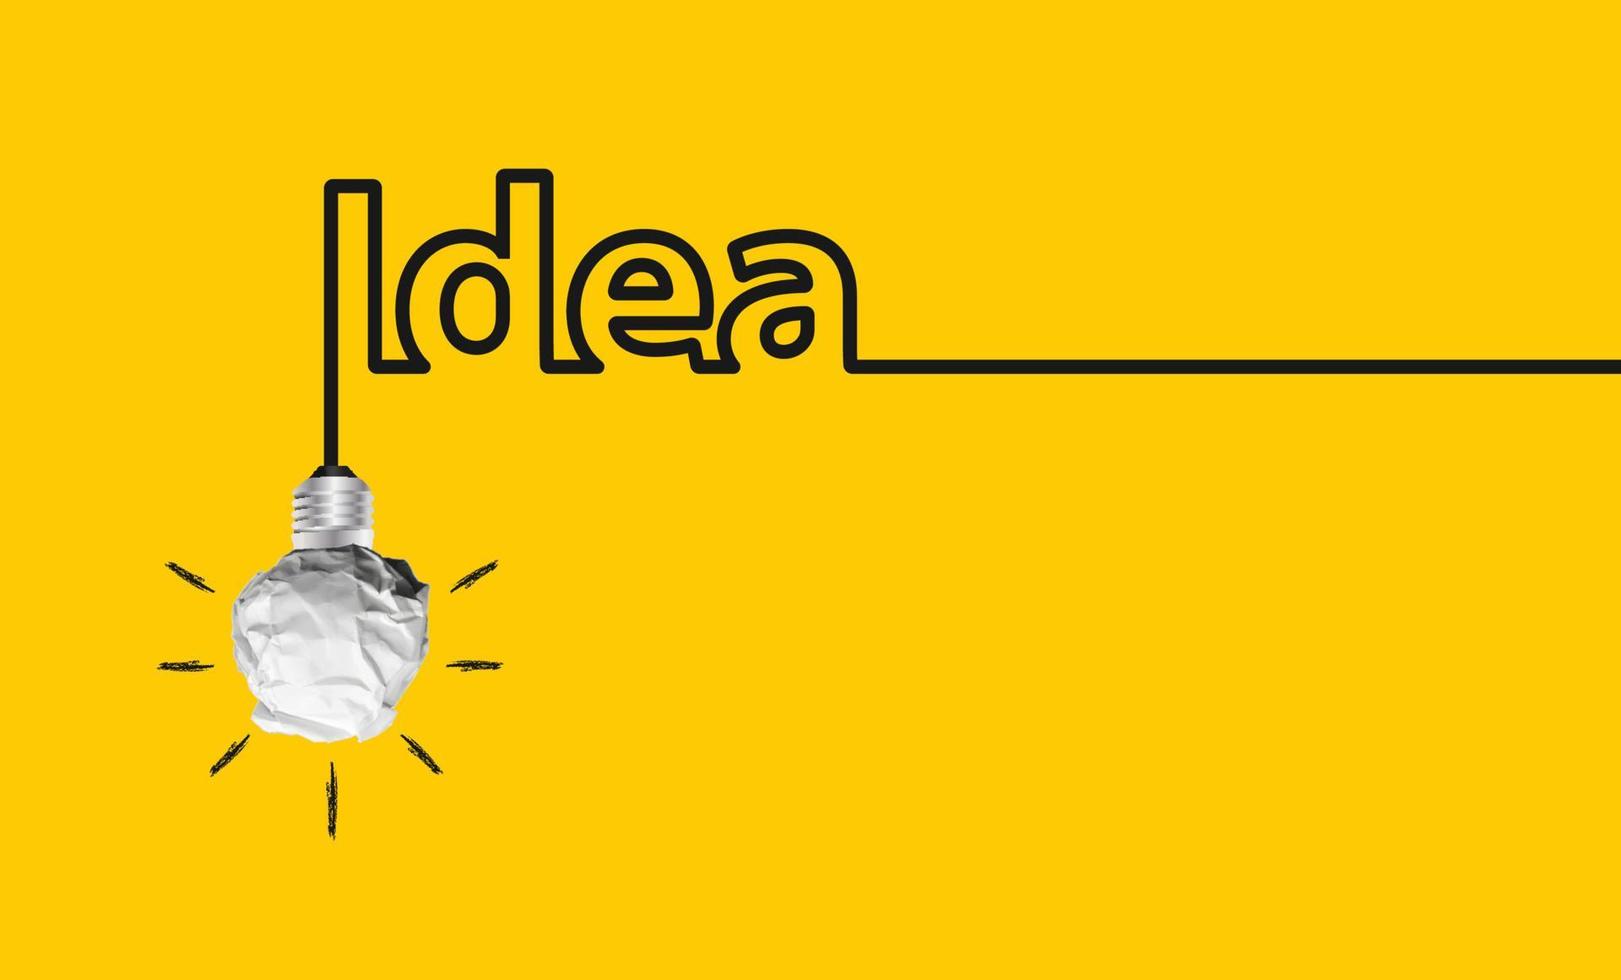 concetto di vettore idea creativa e innovazione con palla di carta. con pittura artistica di doodle